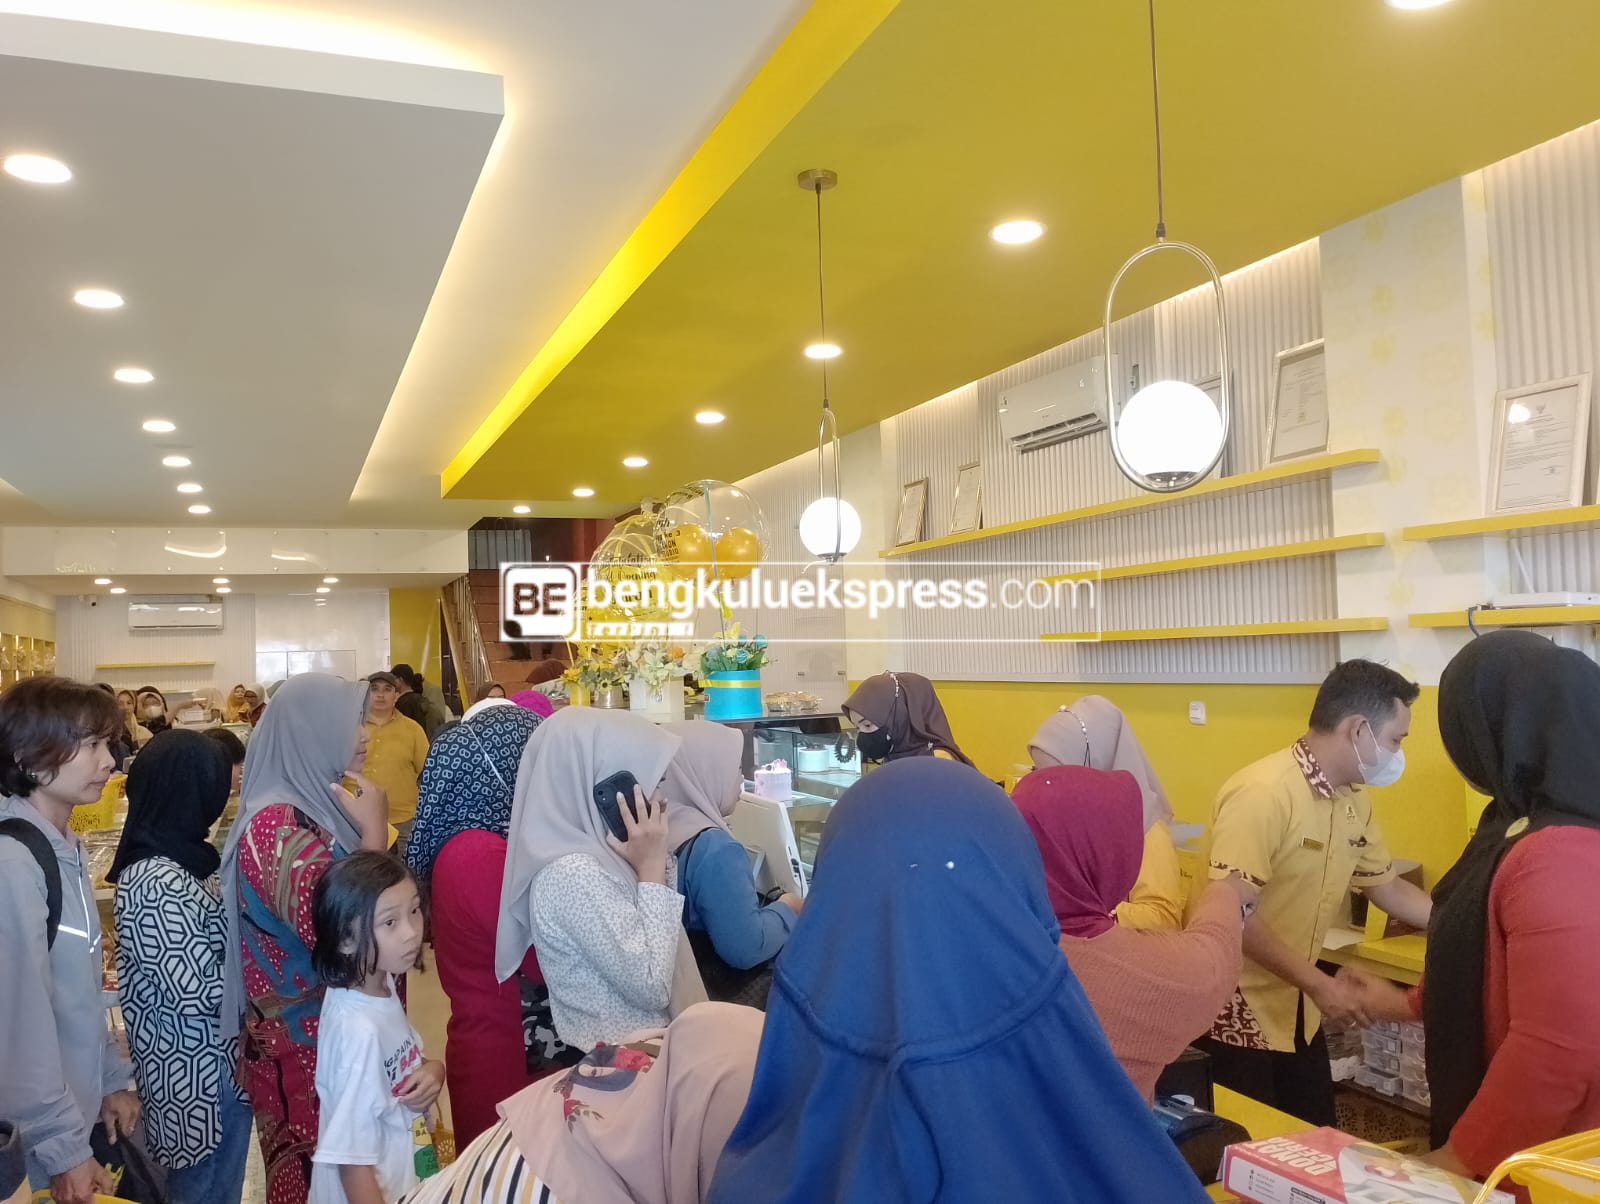 Syarah Bakery, Pusat Oleh-oleh Bengkulu Spesialis Olahan Durian,  Hadir Dengan Outlet Baru 